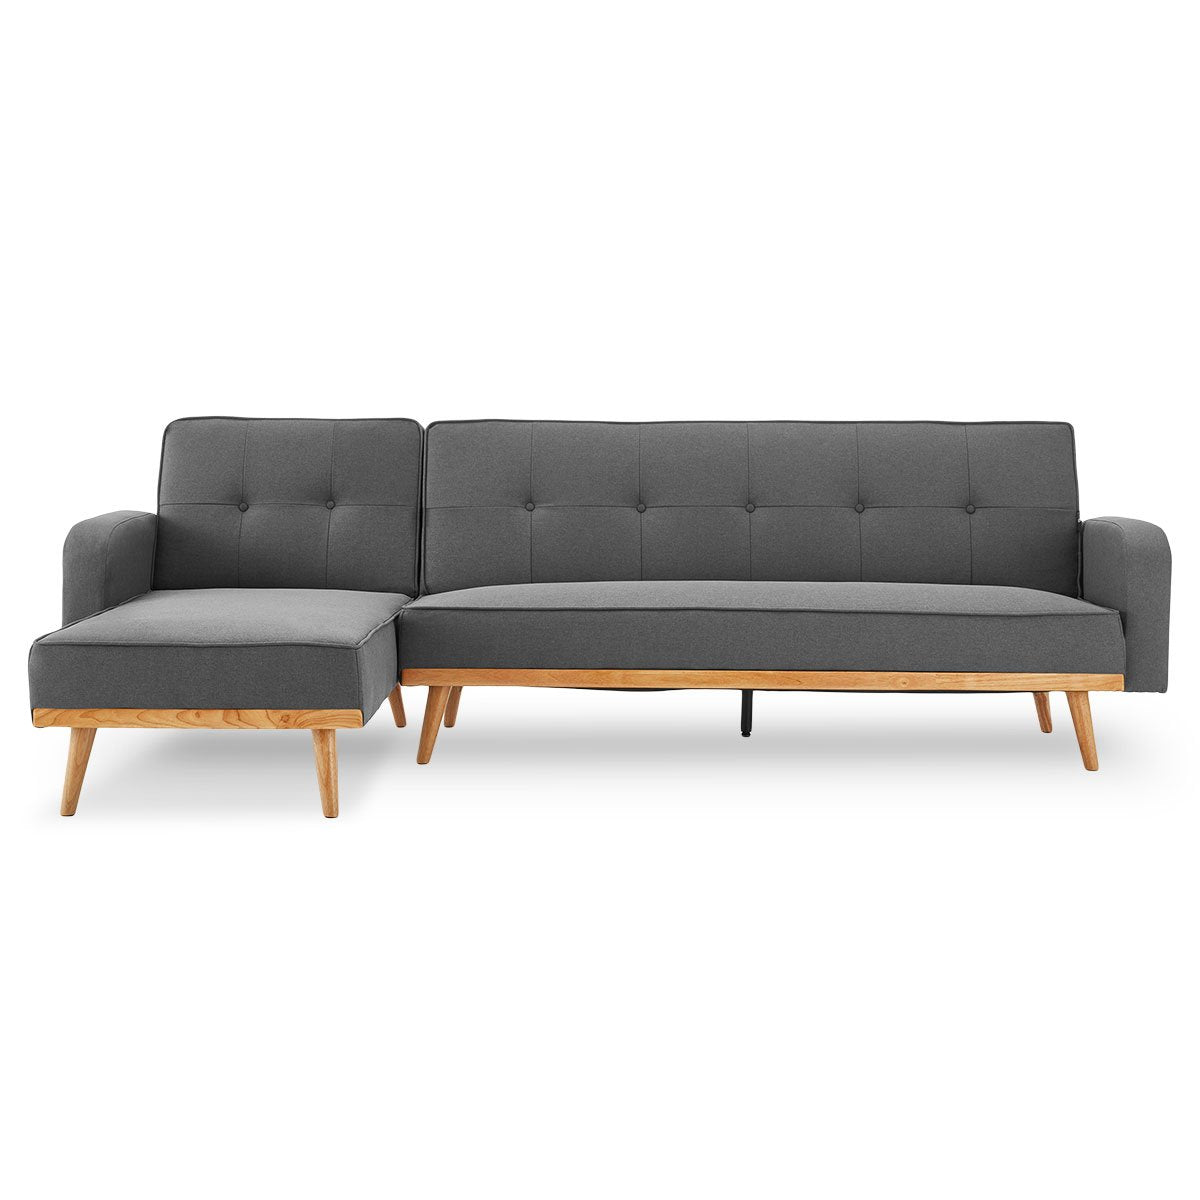 Sarantino 3-Seater Corner Sofa Bed | Chaise Lounge | Dark Grey